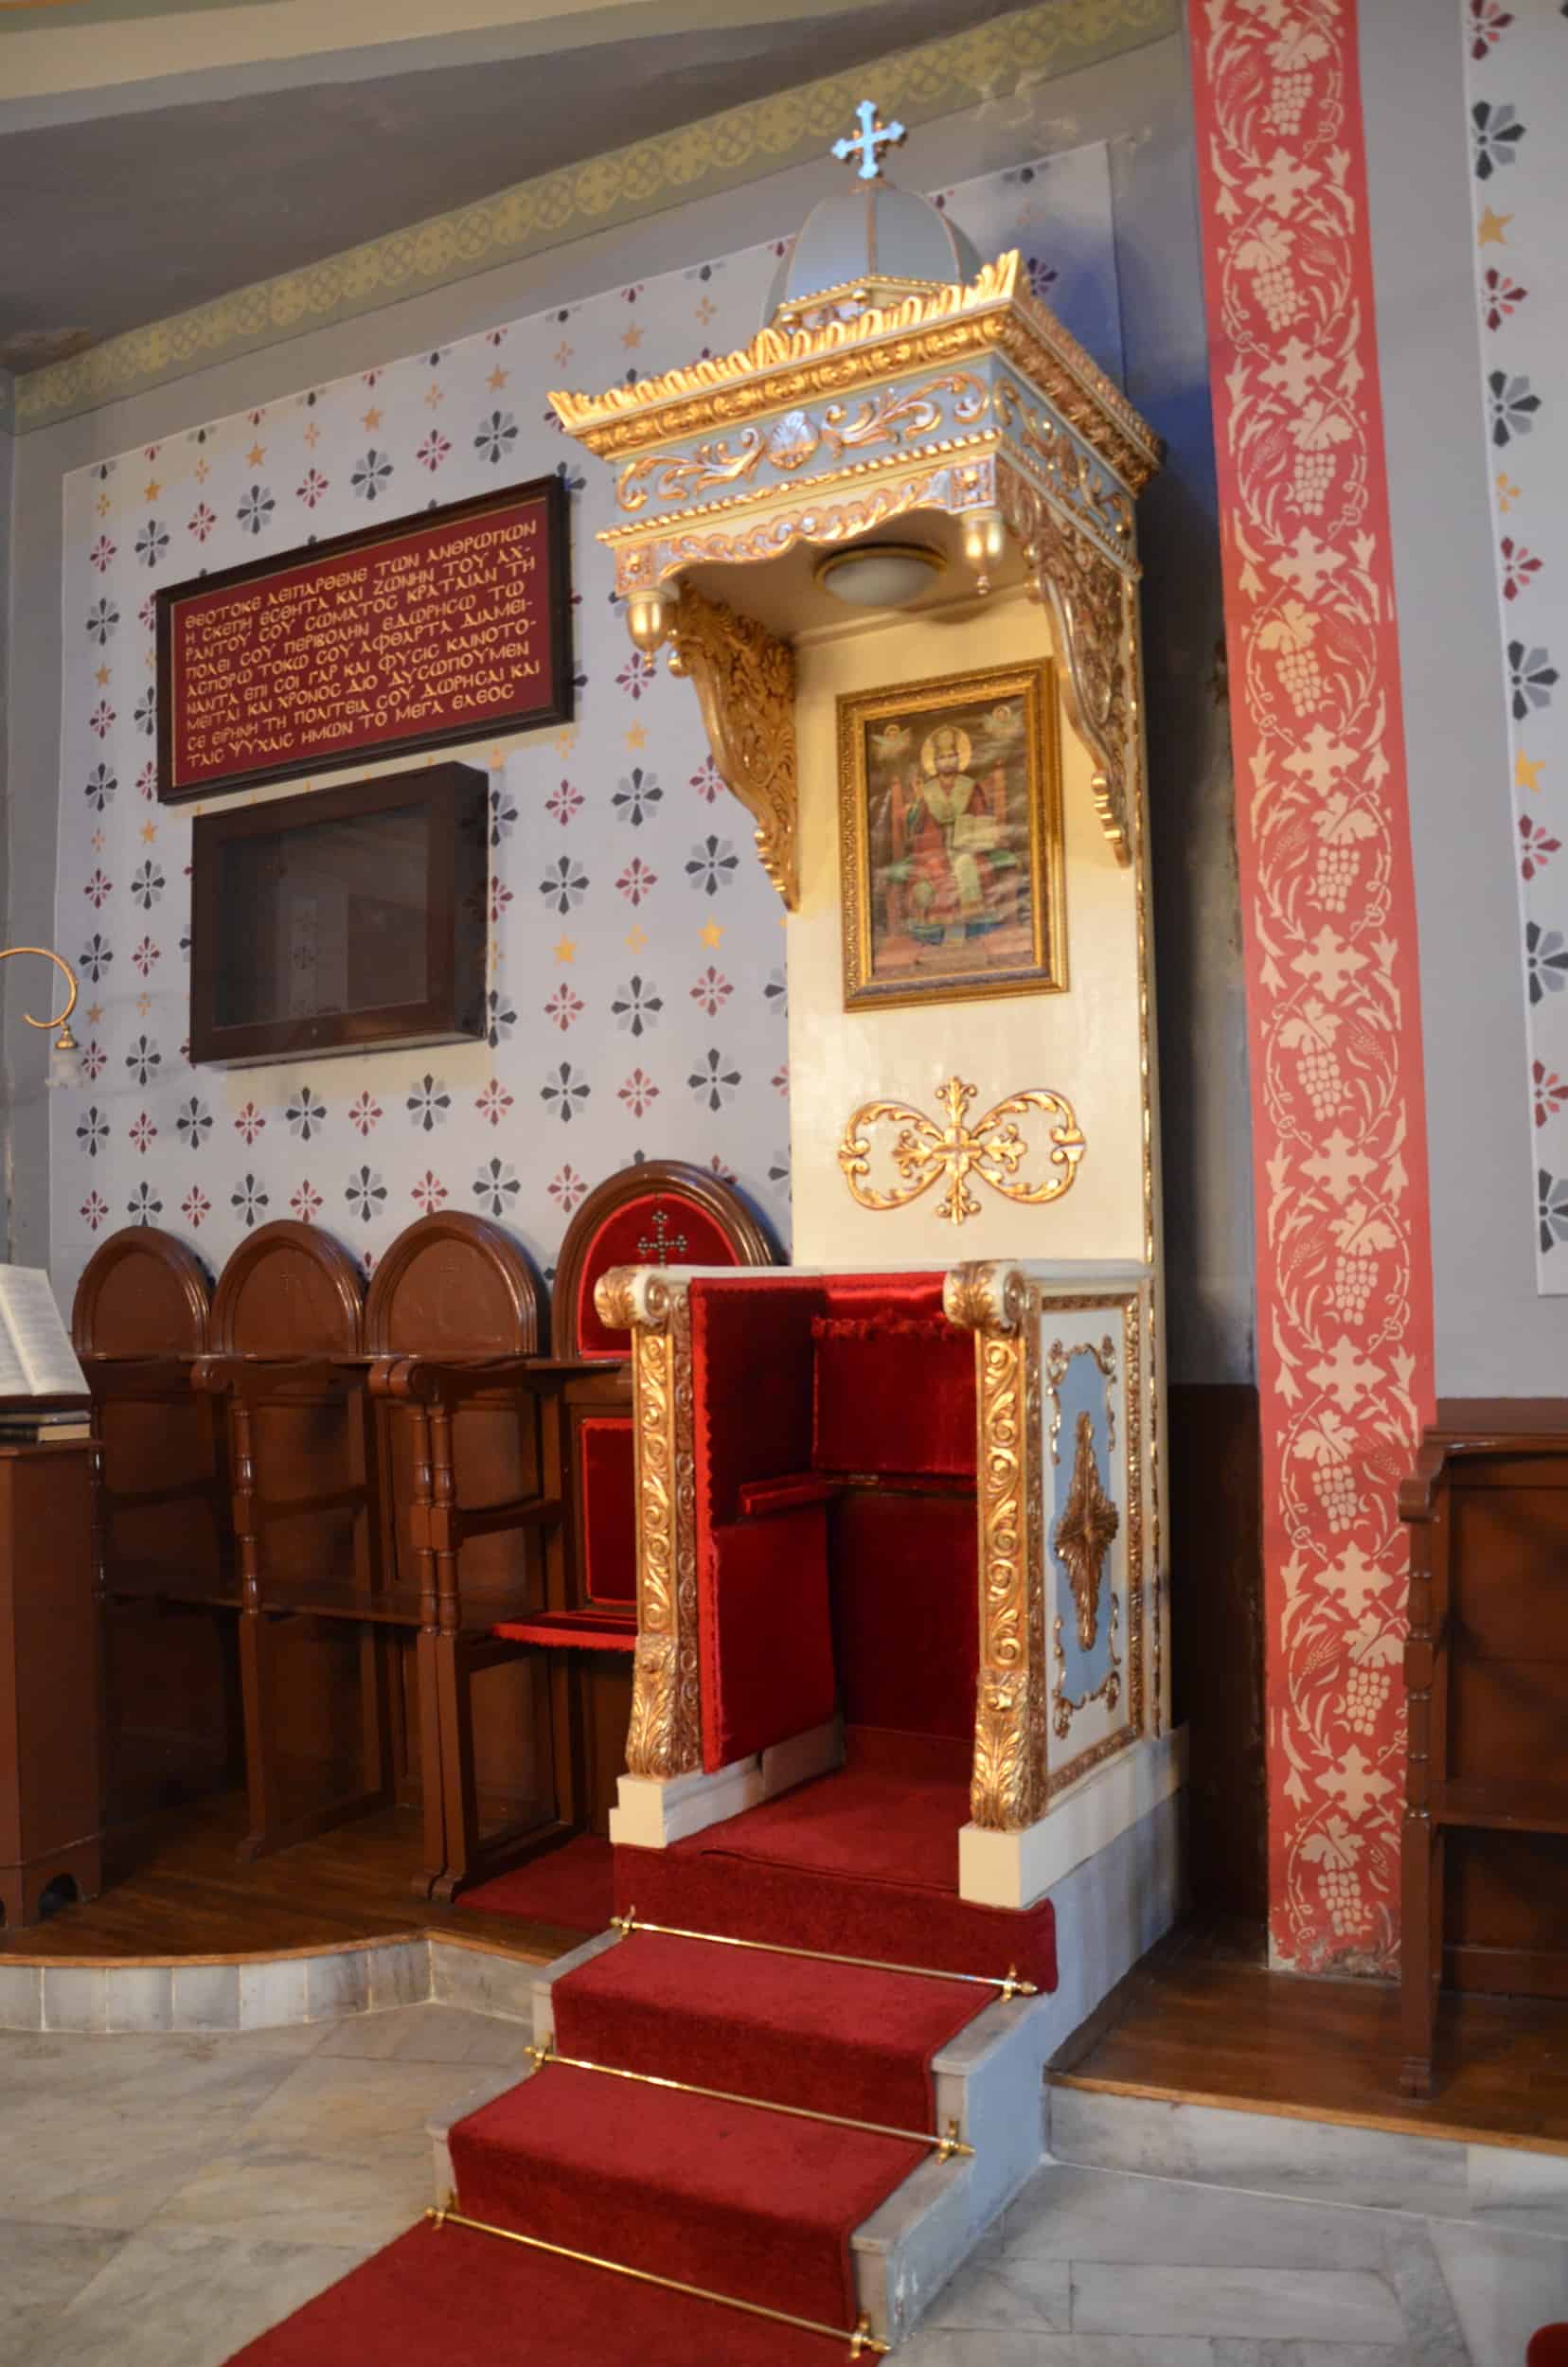 Throne at Panagia Vlacherna Church